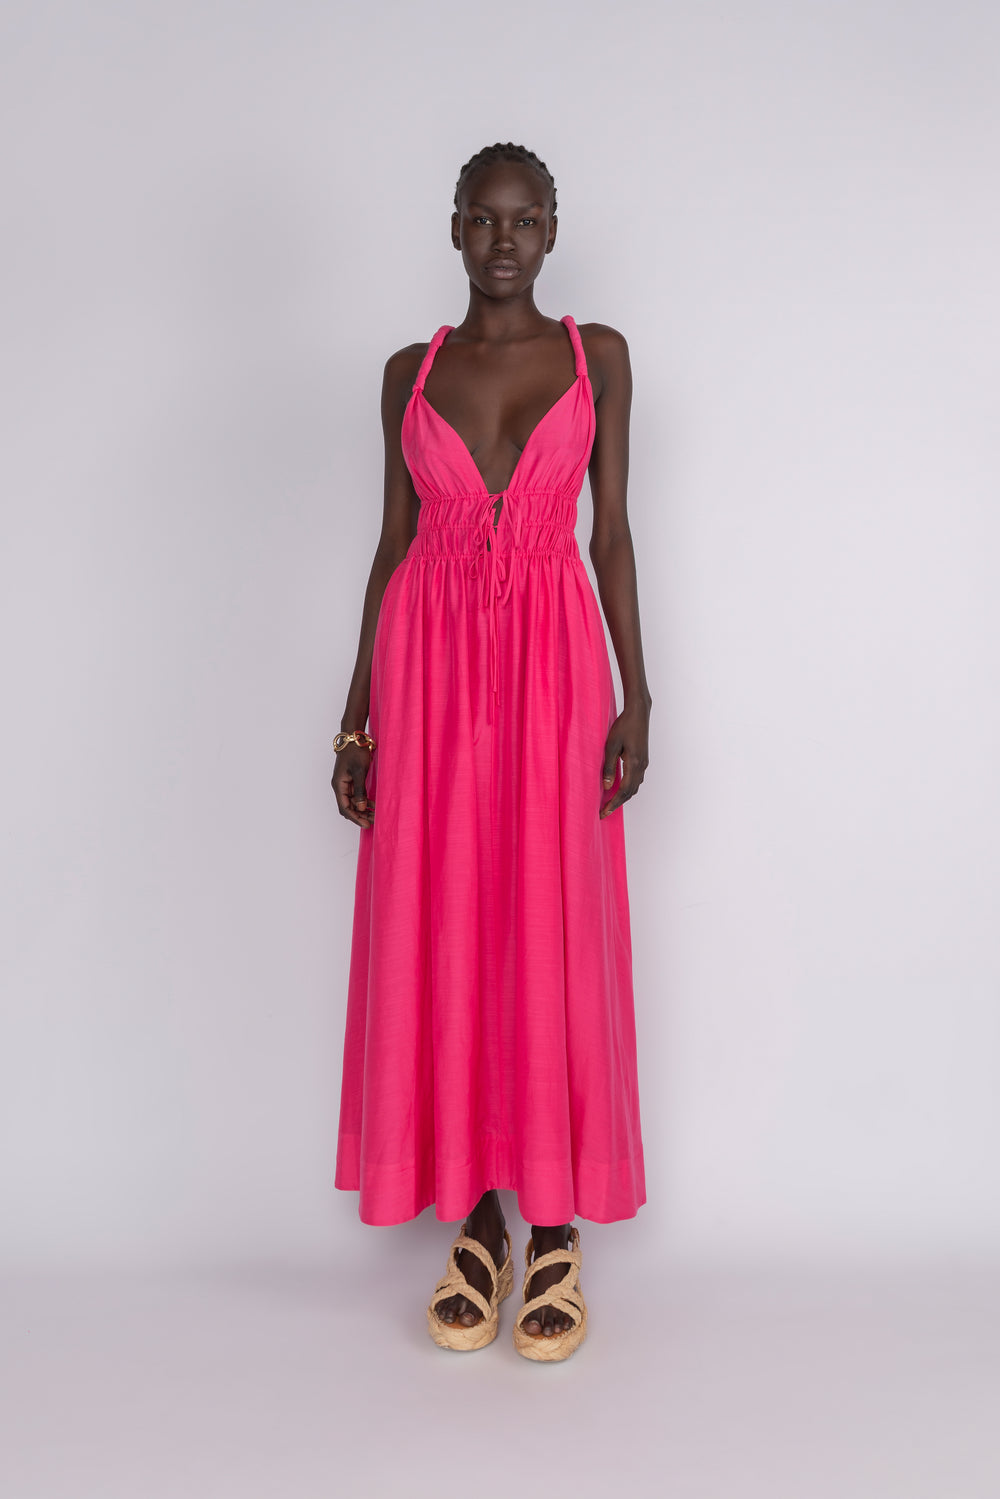 Tied Up Full Length Dress - Raspberry